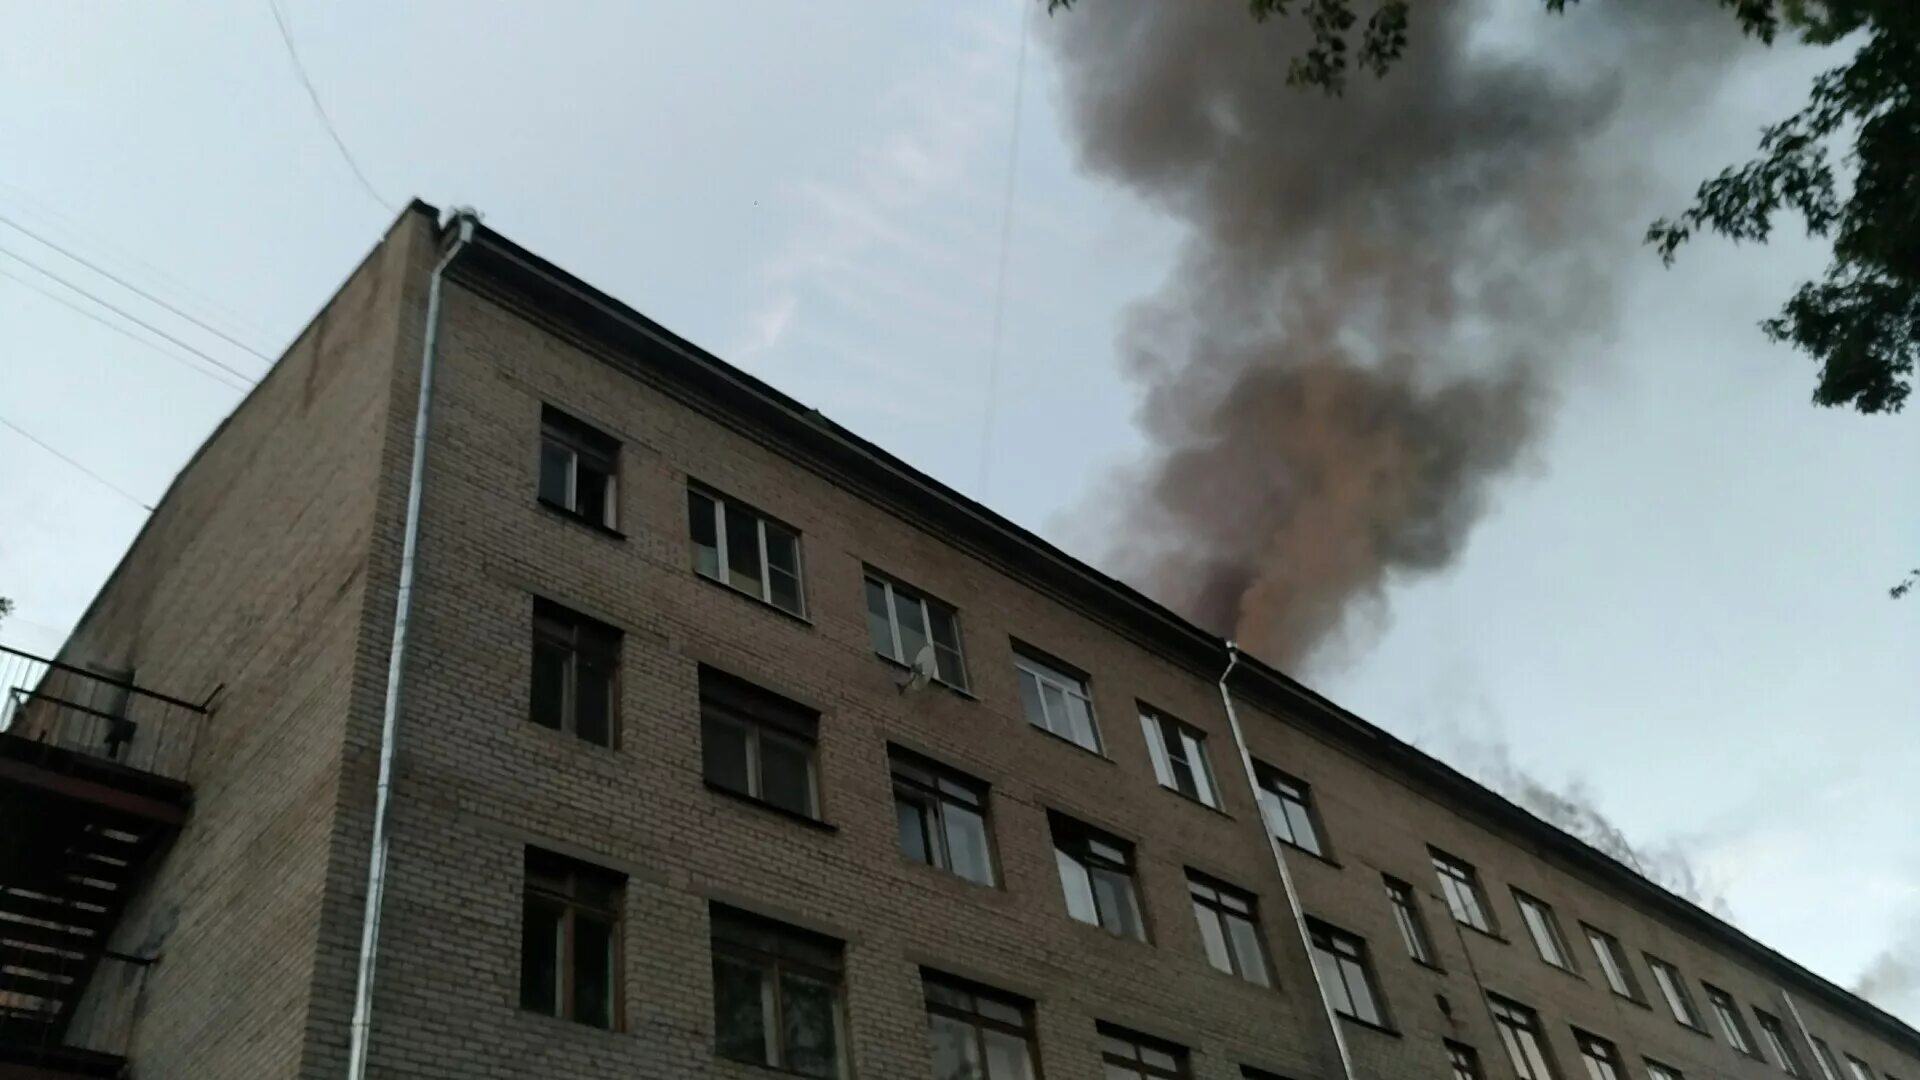 Горит общежитие. Пожар в Конаково сейчас. В Твери горело общежитие. Пожар в общежитии Верещагино.